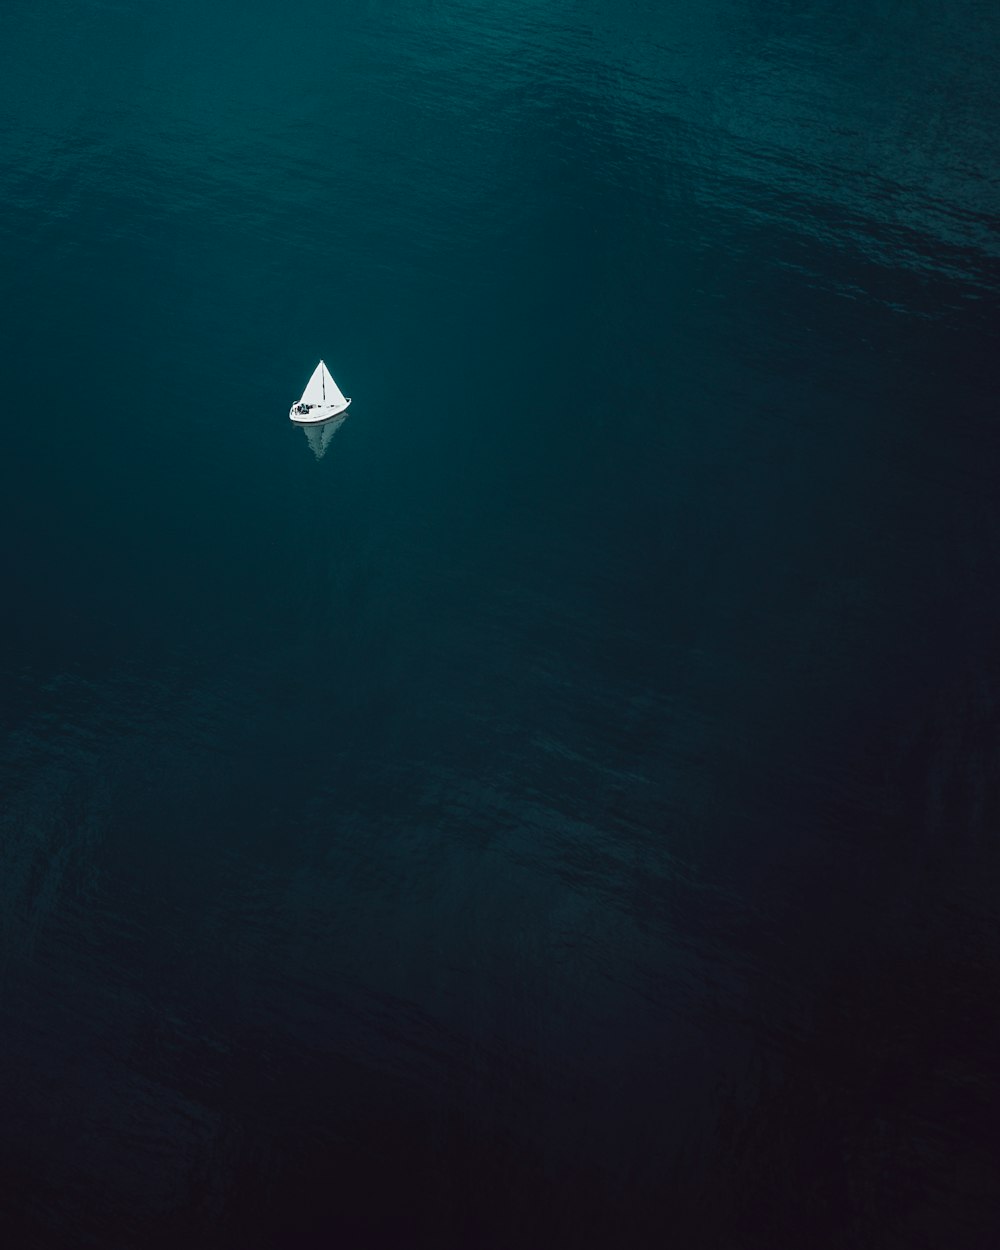 Fotografía aérea de un velero navegando en un cuerpo de agua